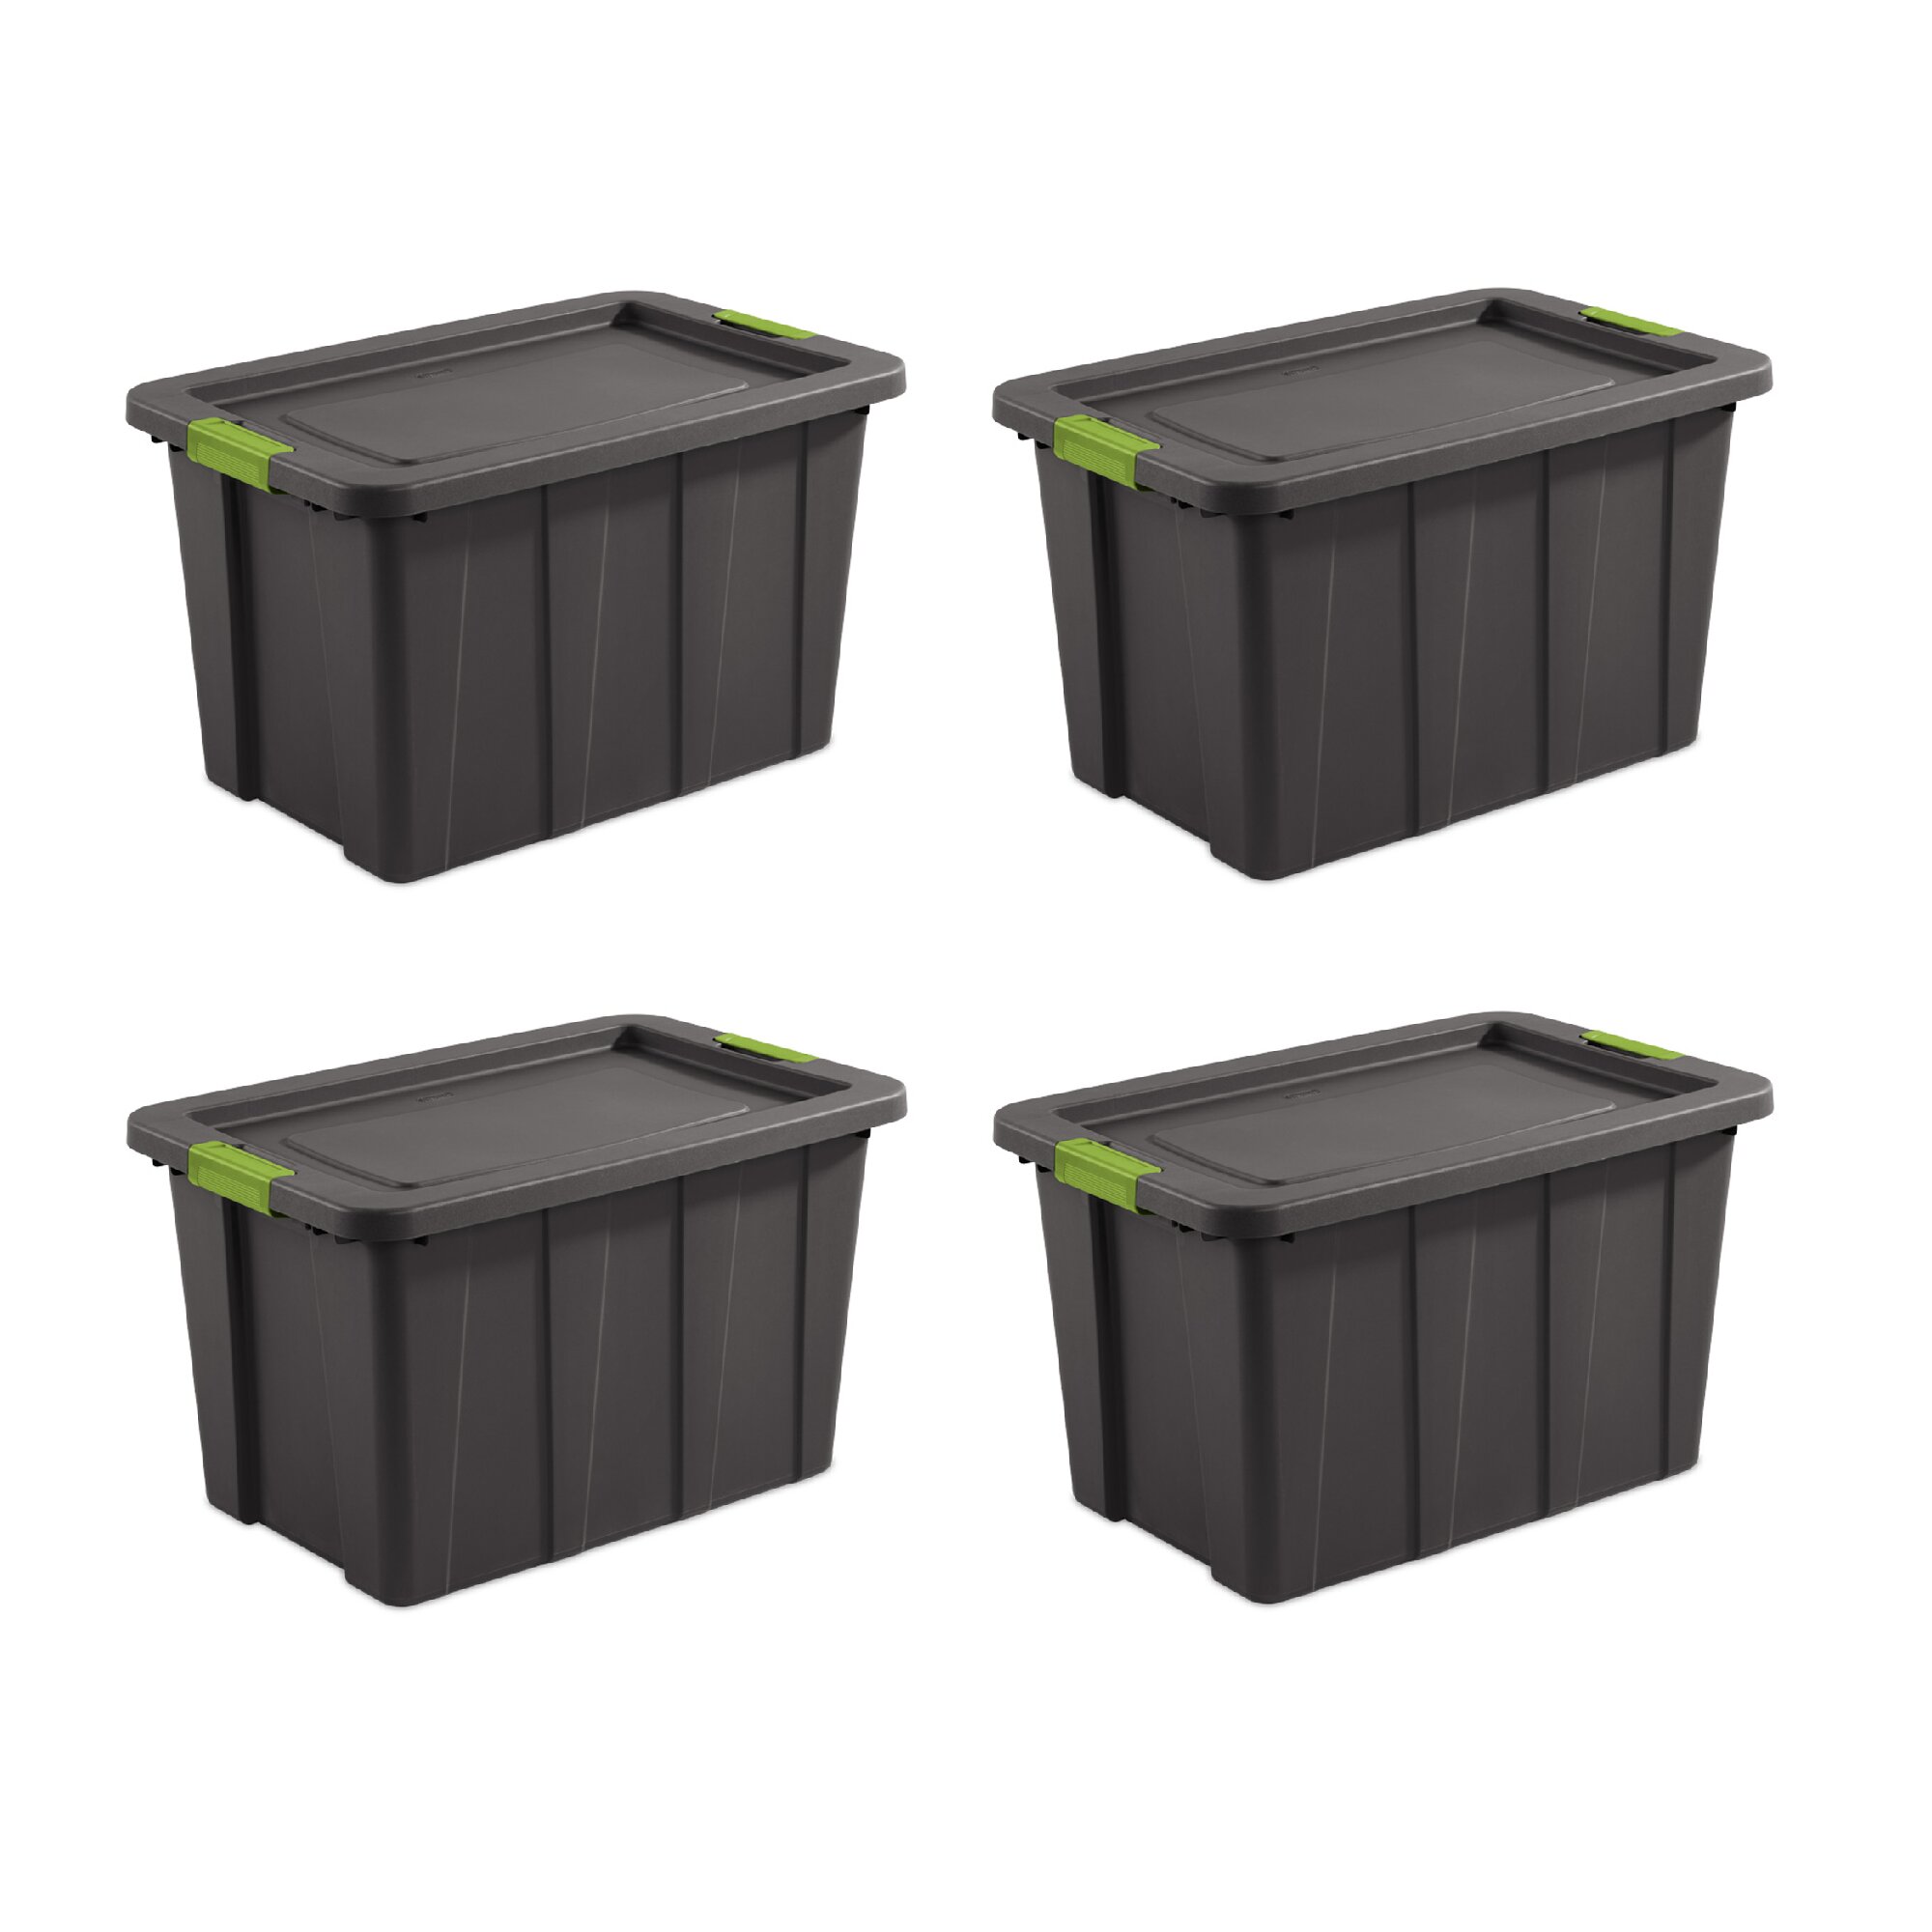 Sterilite 50 Gallon Stacker Tote Plastic Set of 3 organizer box